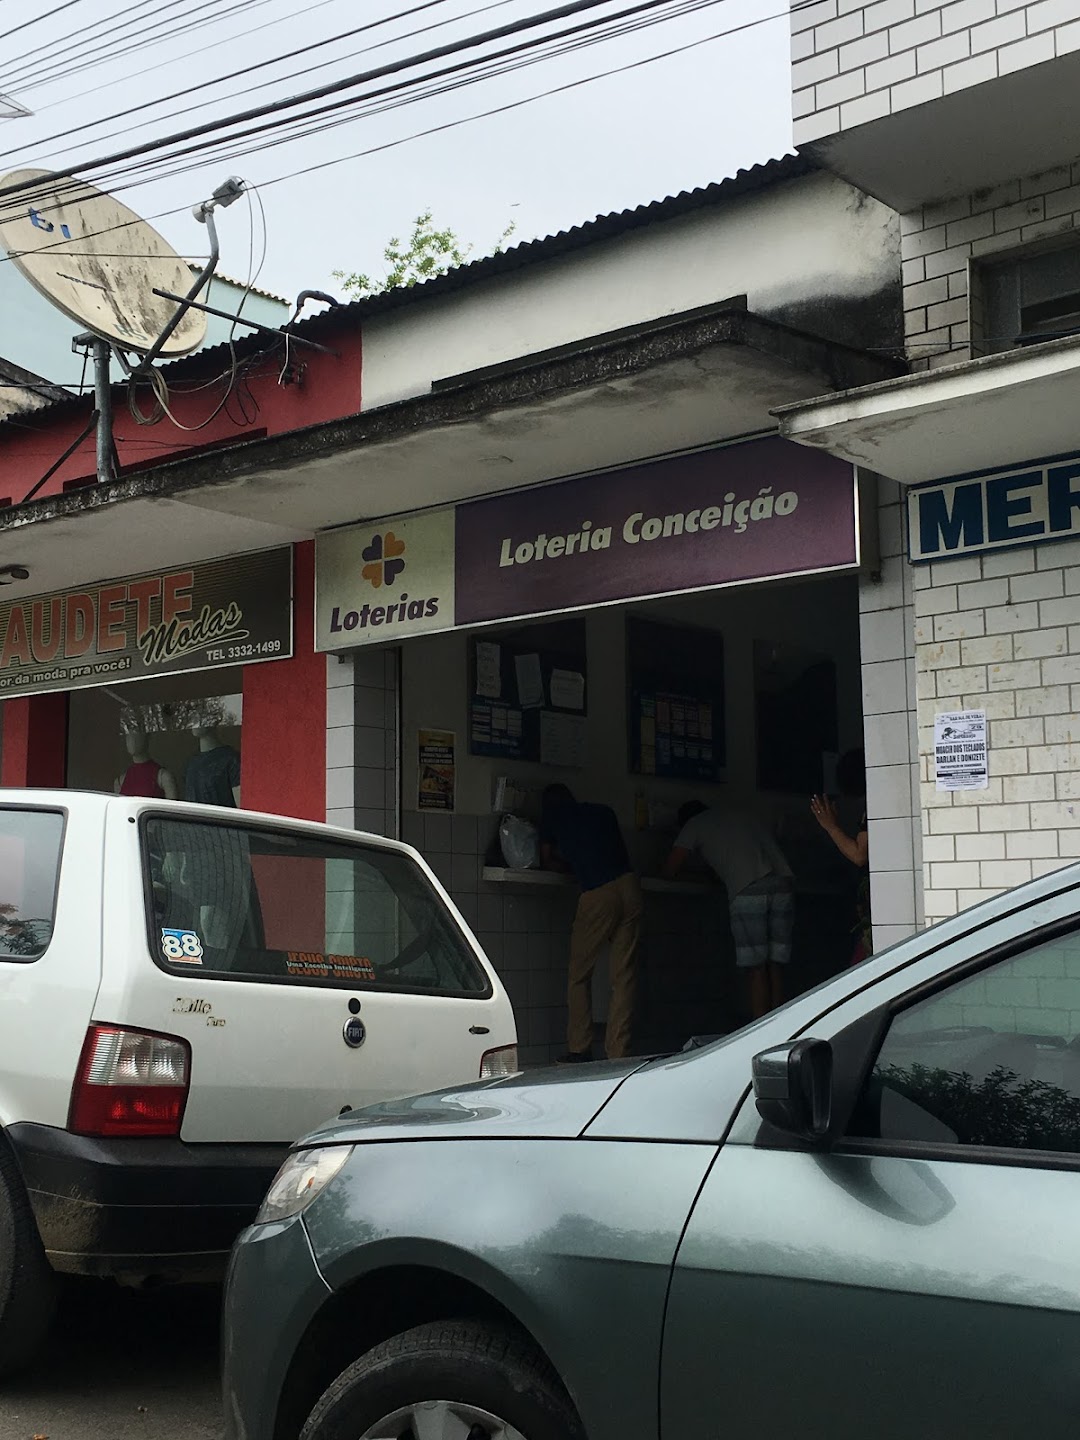 Casa lotérica - Loteria Conceição